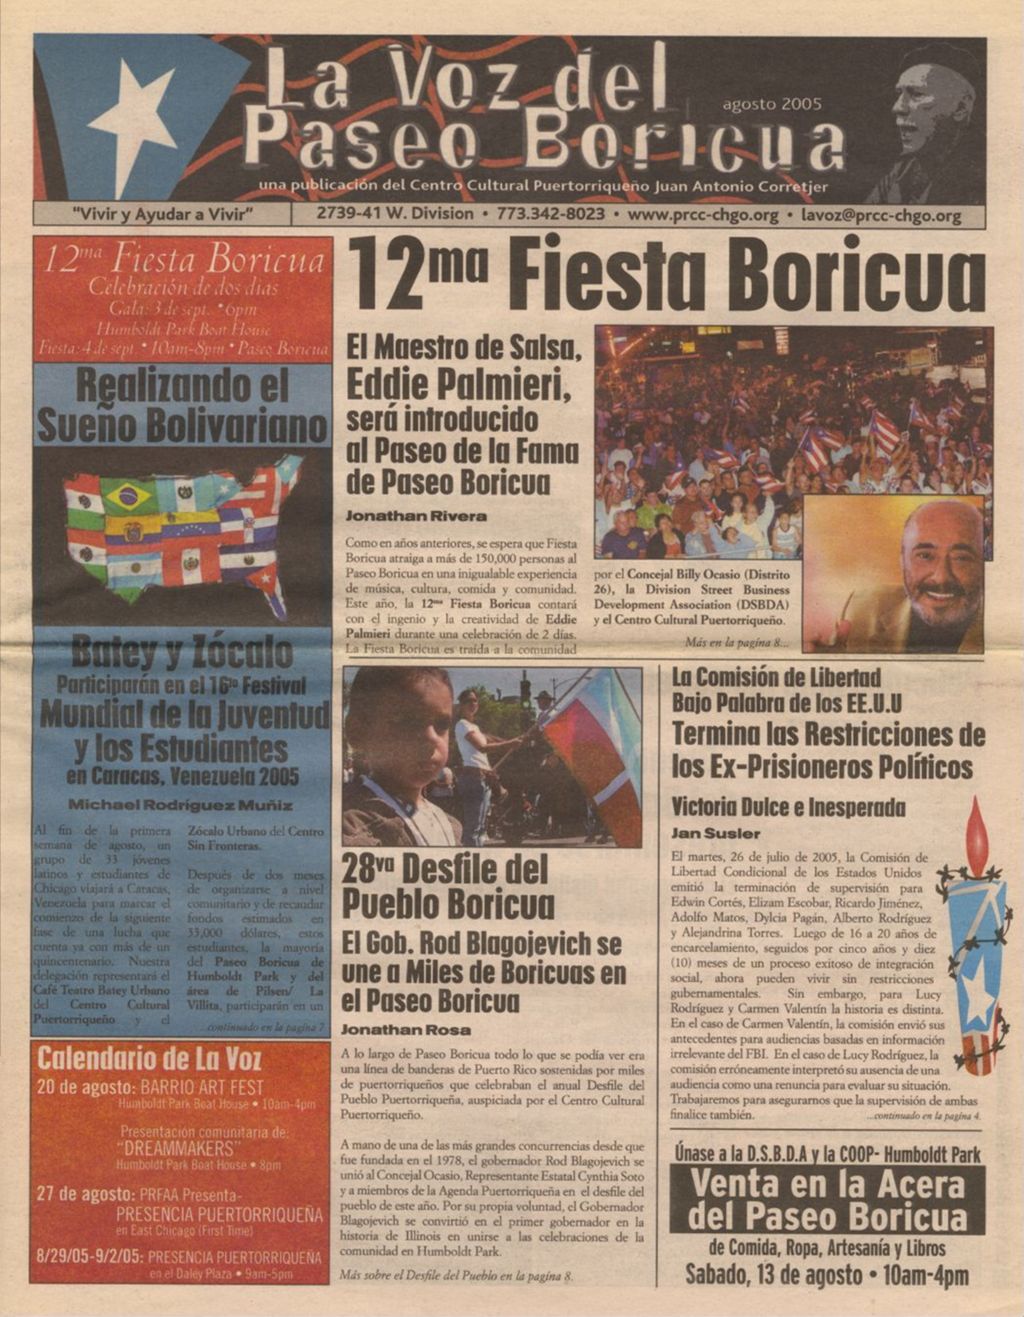 La Voz del Paseo Boricua; August 2005 (Spanish and English covers)